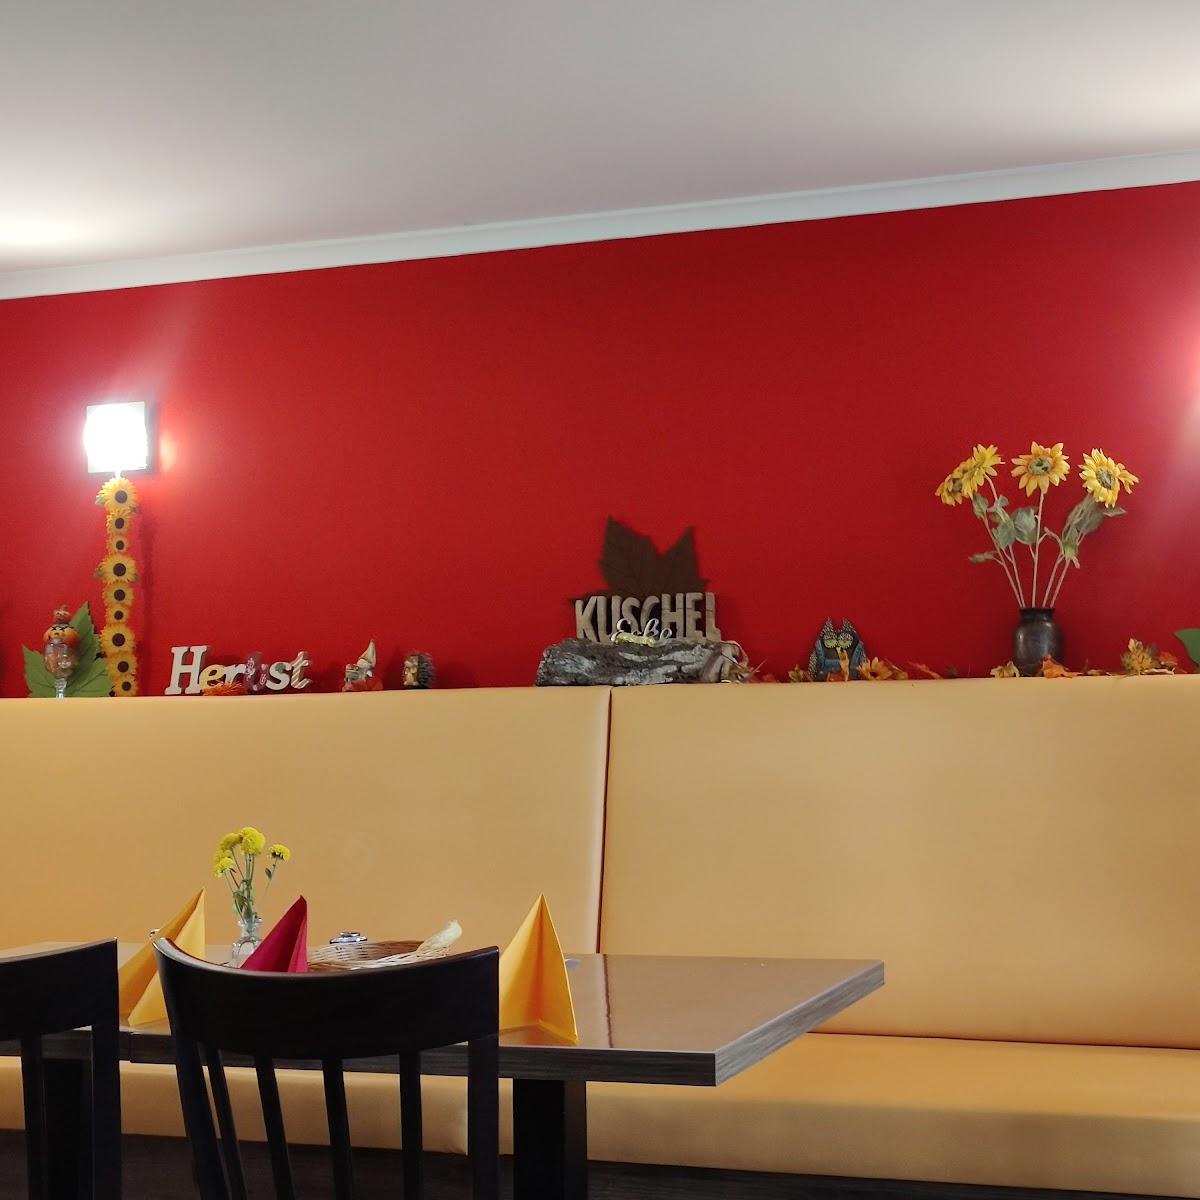 Restaurant "Honigstübchen-Café und Allerlei" in Plattenburg